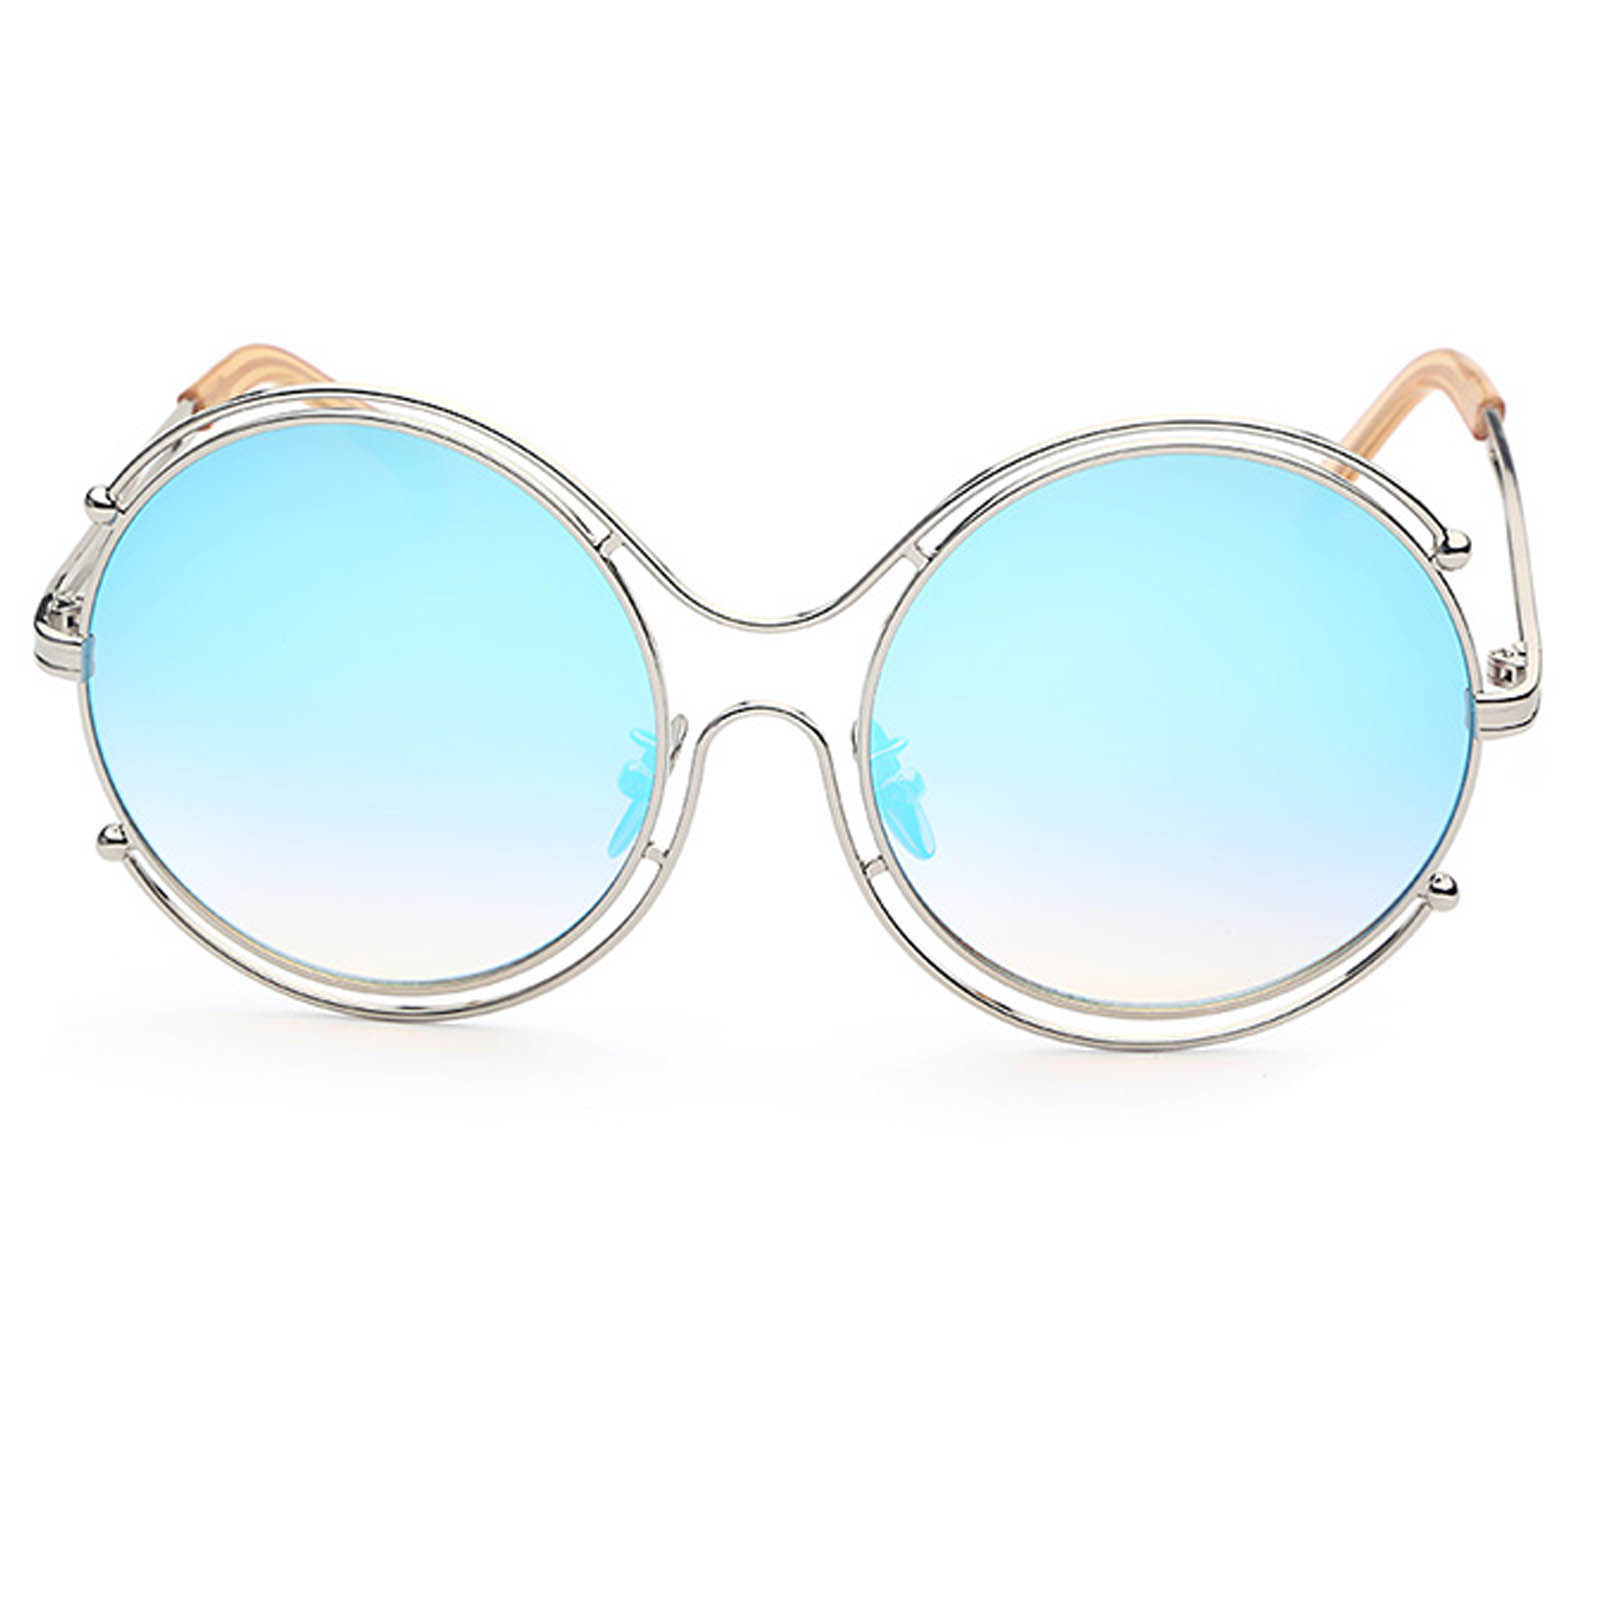 OWL ® 025 C3 Round Eyewear Sunglasses Women’s Men’s Metal Circle Silver ...